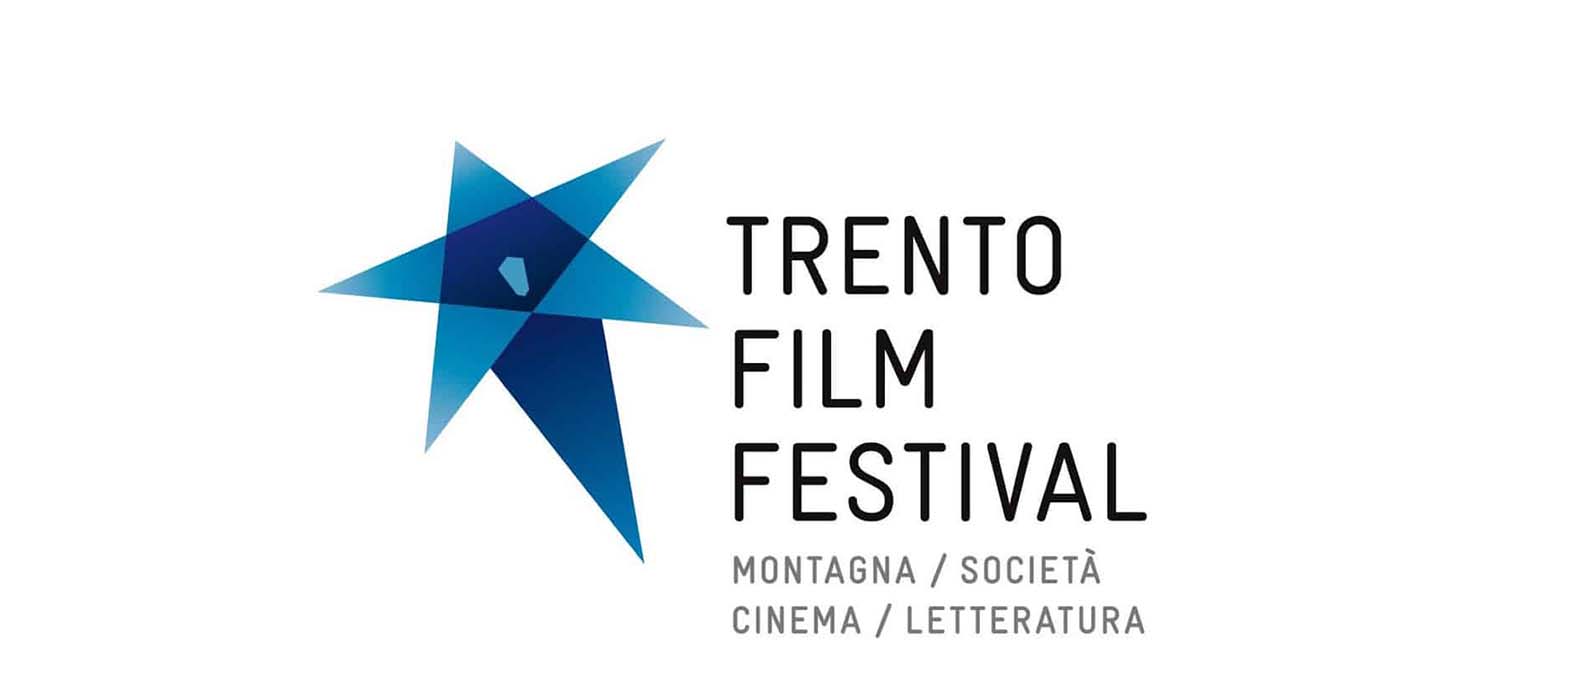 جشنواره فیلم ترنتو 